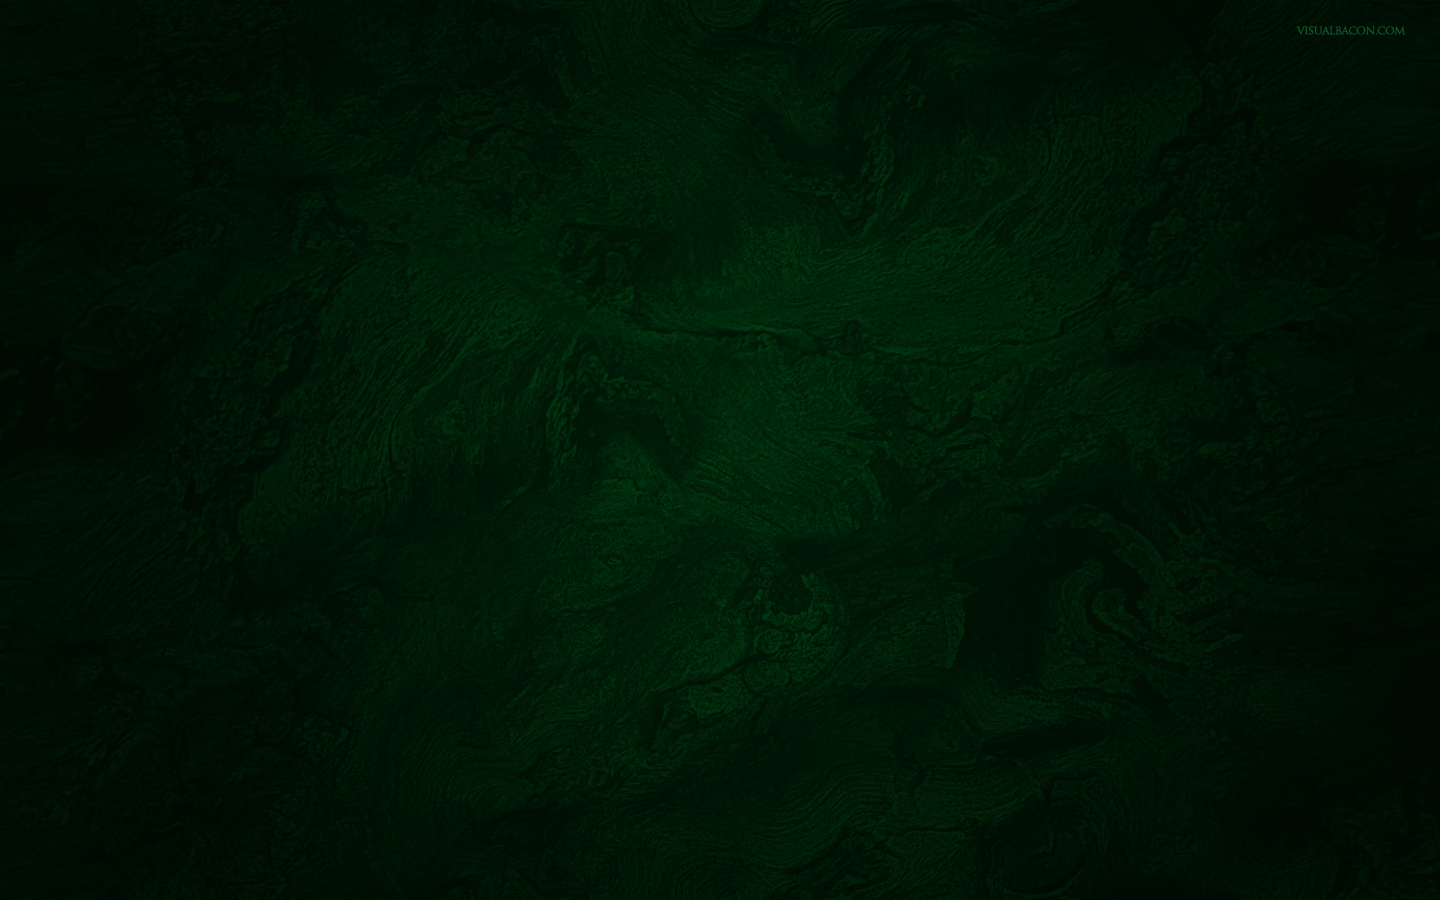 壁の濃い緑の壁紙,緑,黒,闇,自然,光